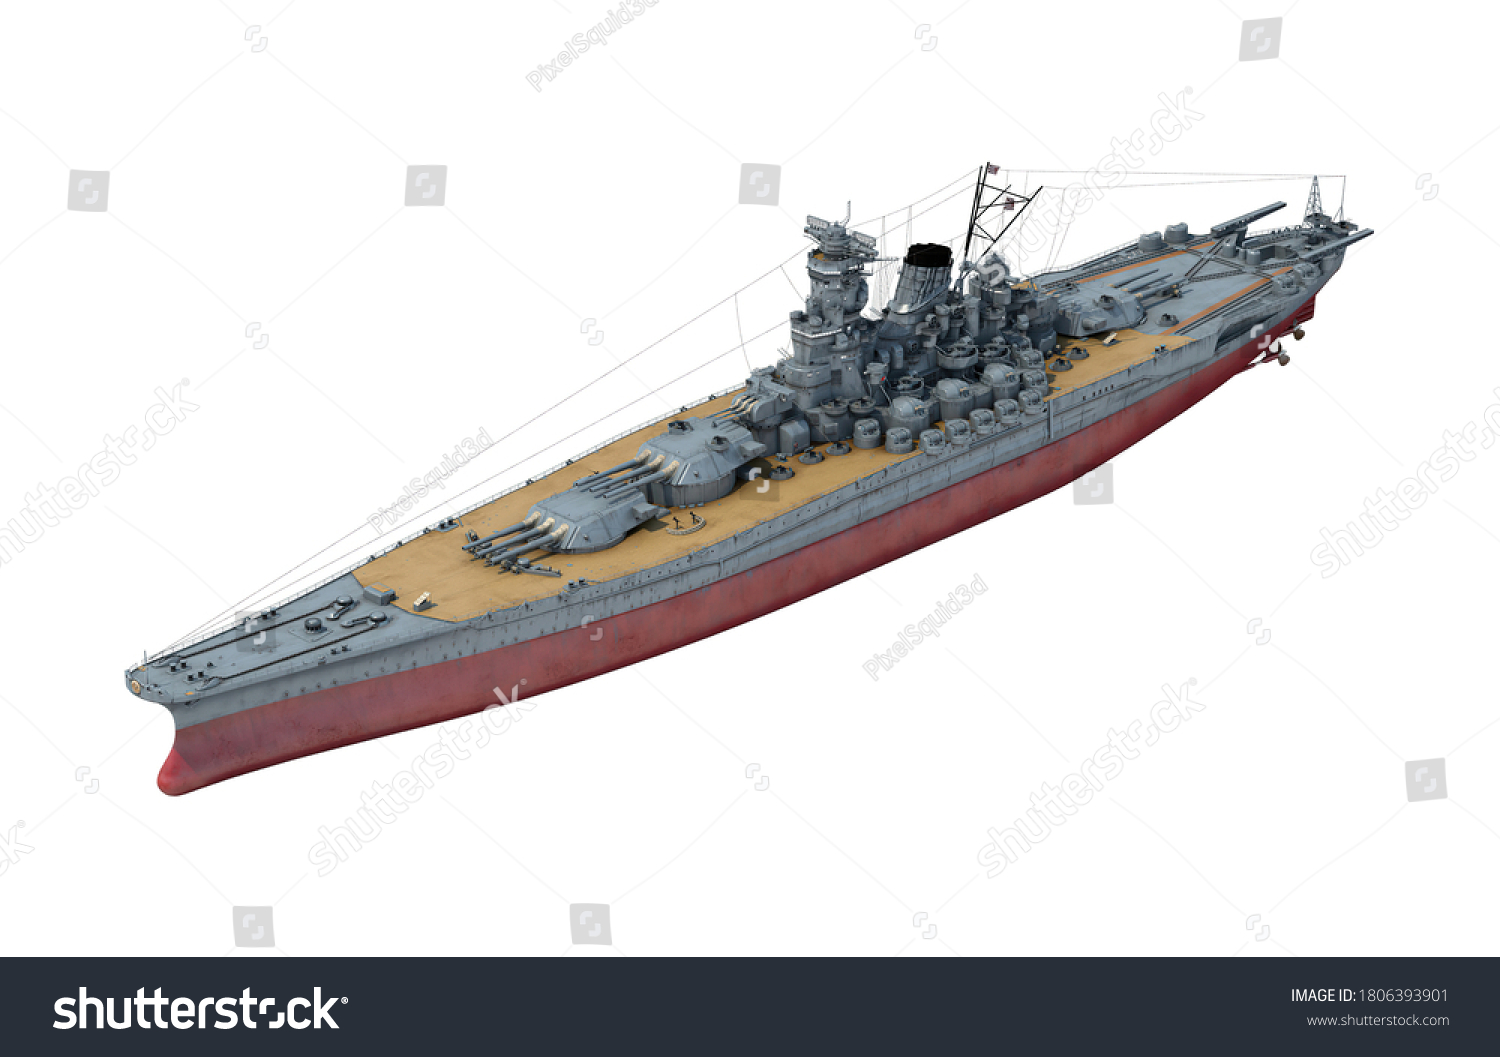 戦艦大和 のイラスト素材 画像 ベクター画像 Shutterstock